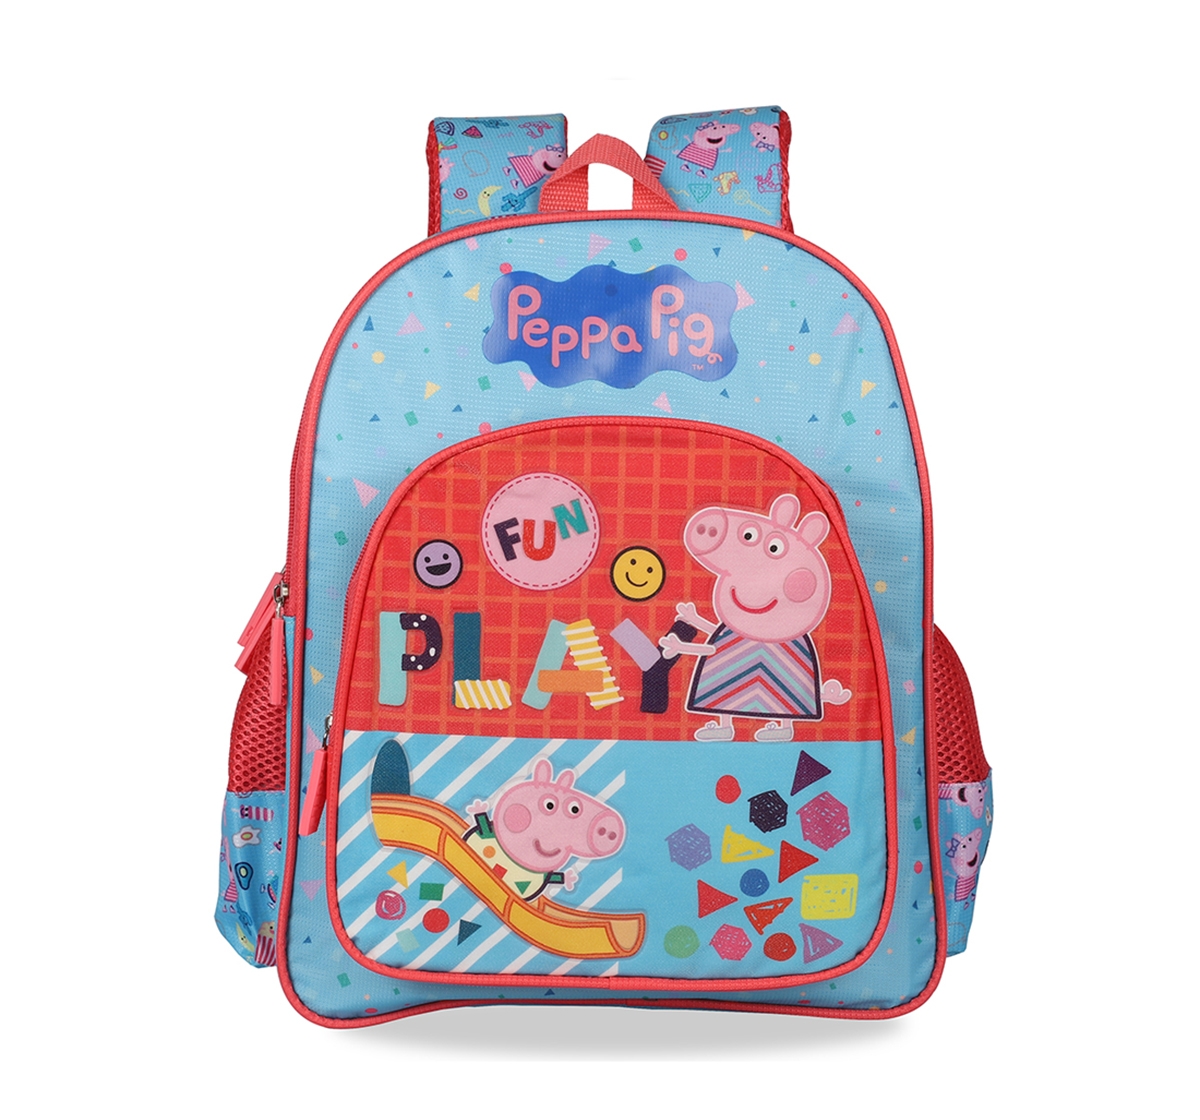 Peppa Pig | Peppa Pig Festival Selfies School Bag 36 Cm for Kids age 3Y+ (Pink) 7